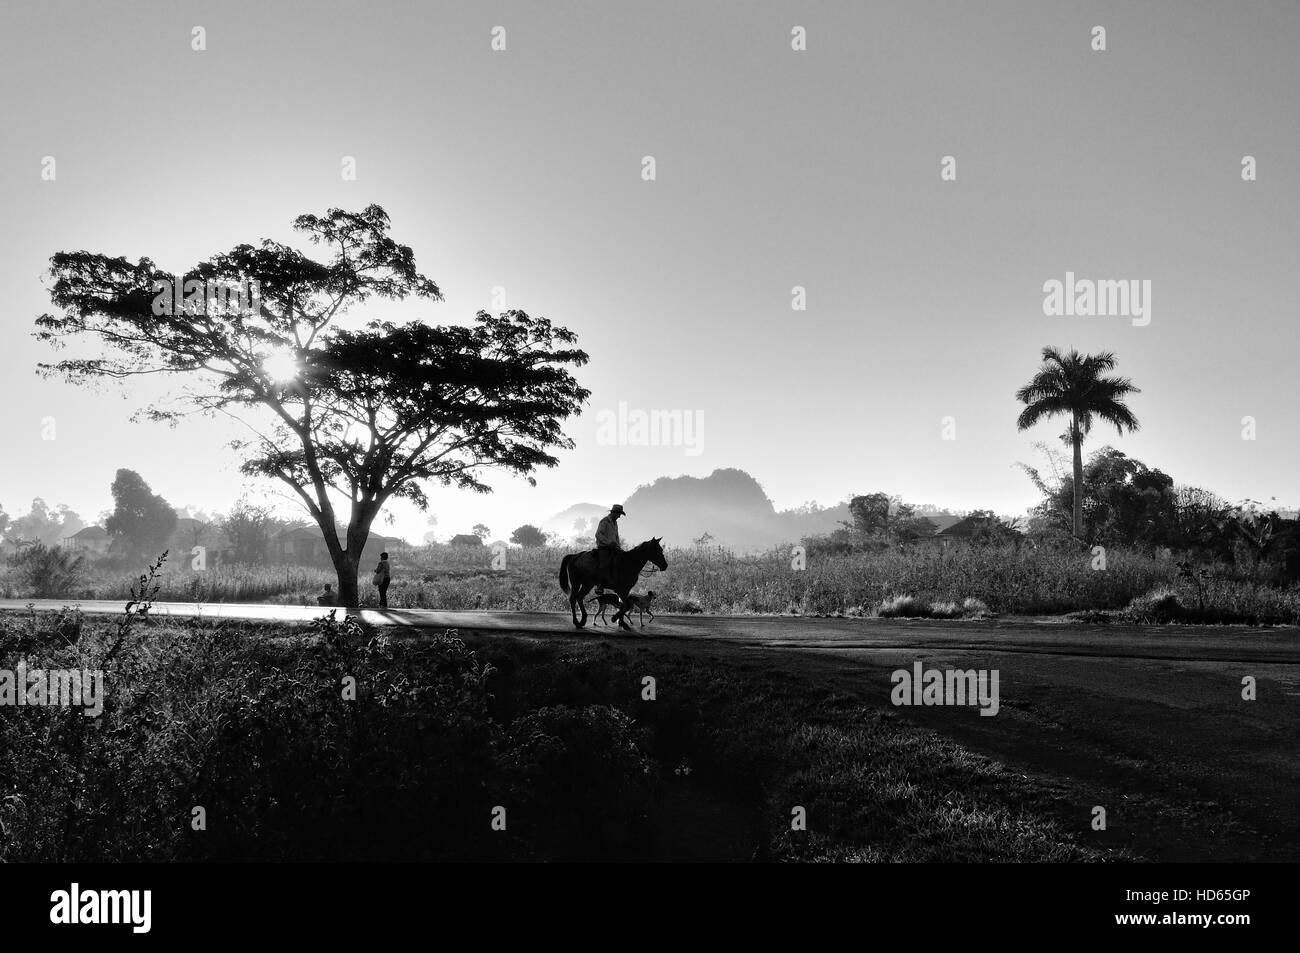 Man on horseback, sunrise, Viñales, Cuba Stock Photo